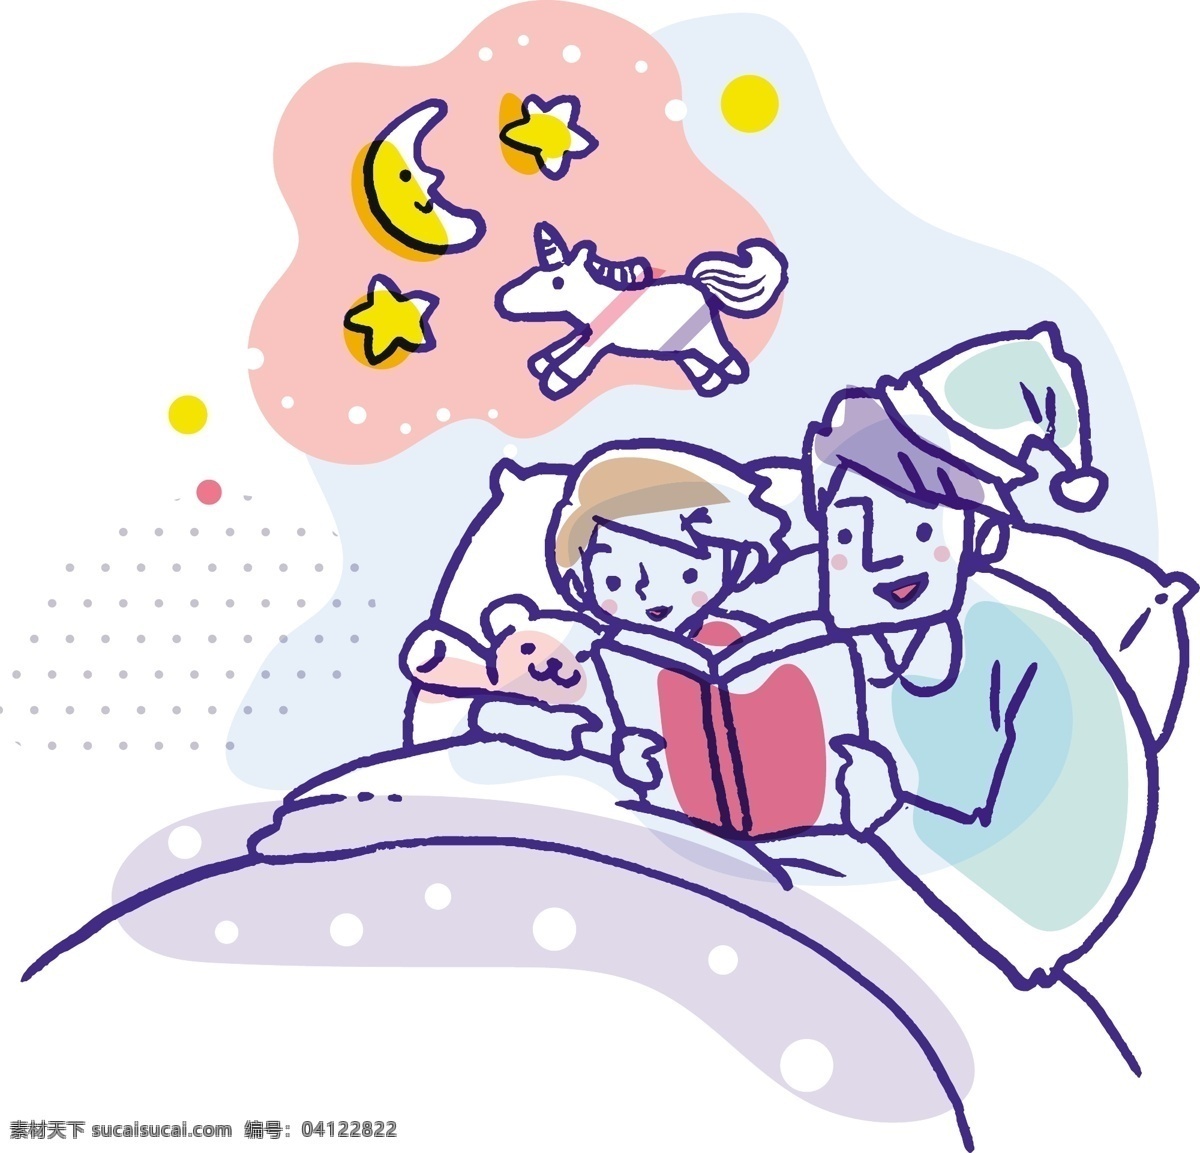 日常 生活 家庭 引导 页 h5 ui 矢量图 卡通 手绘 插画 父亲节 母亲节